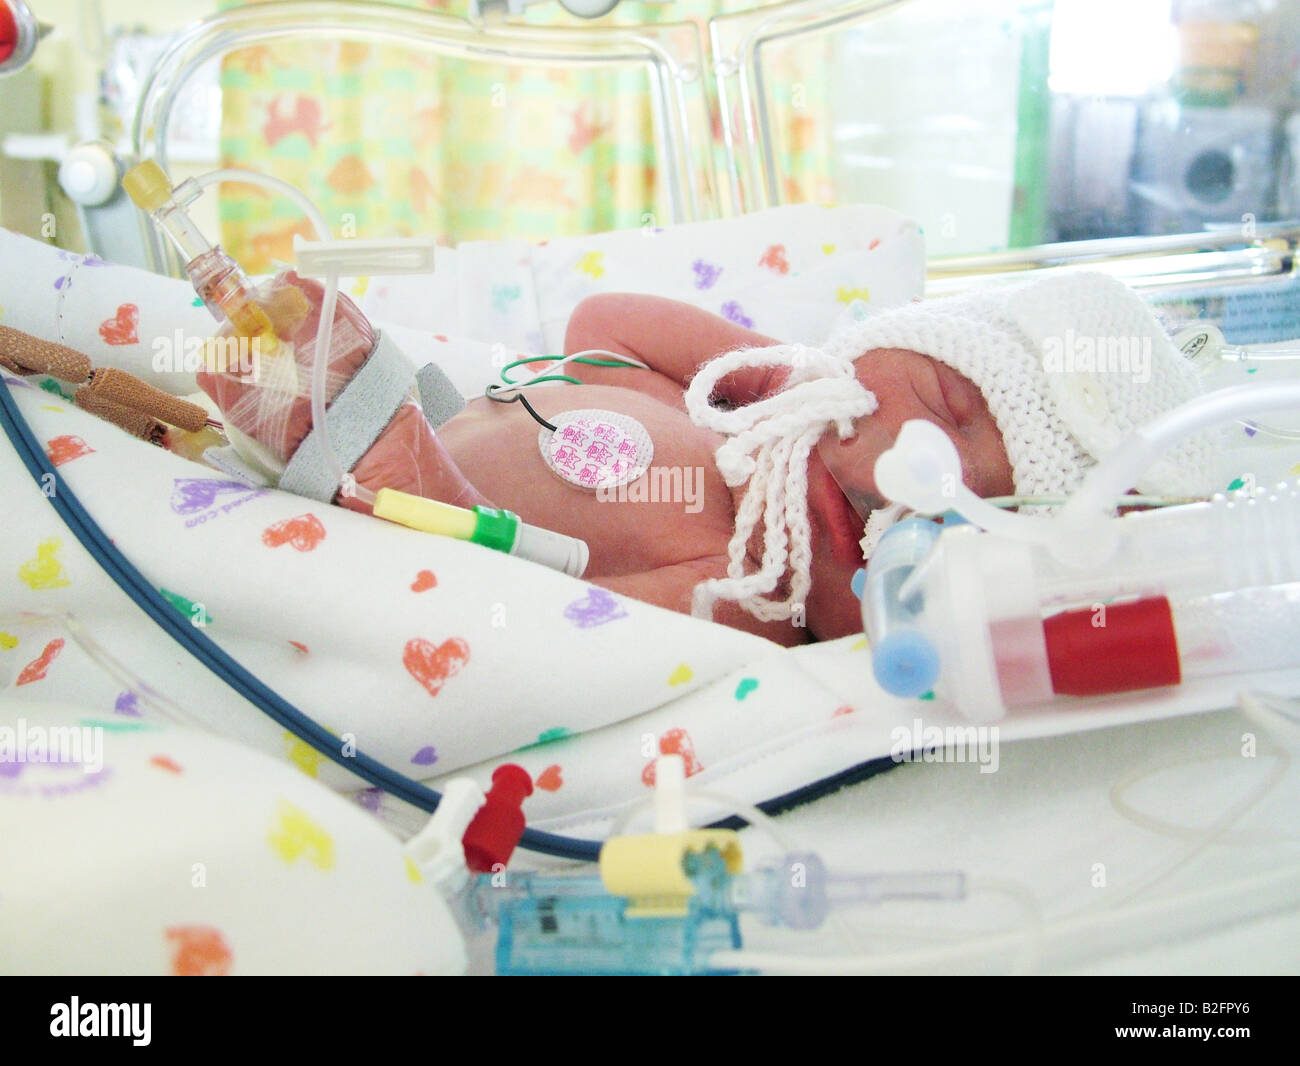 Premature baby in incubator Stock Photo